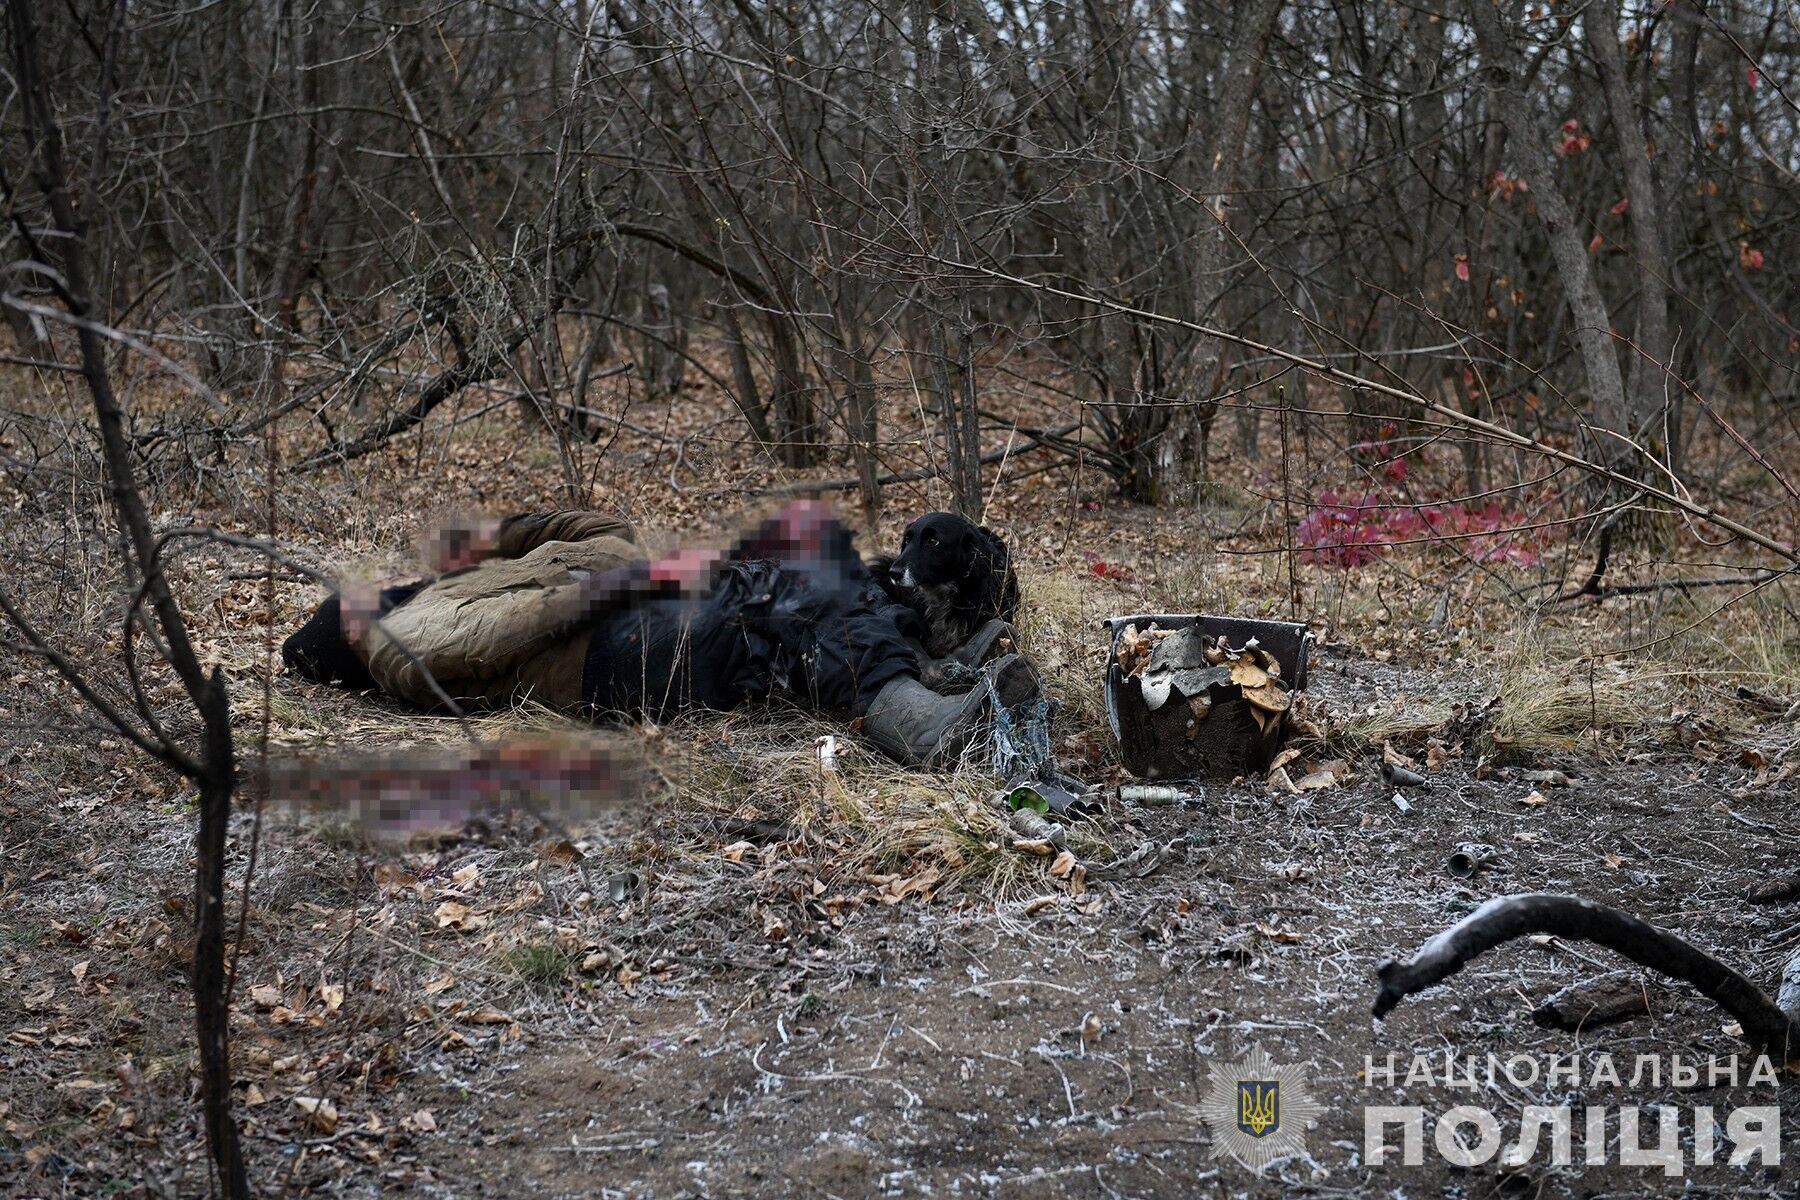 "Тихая охота" закончилась трагически: на Запорожье мужчина бросил в сумку с грибами часть снаряда и погиб от взрыва. Фото